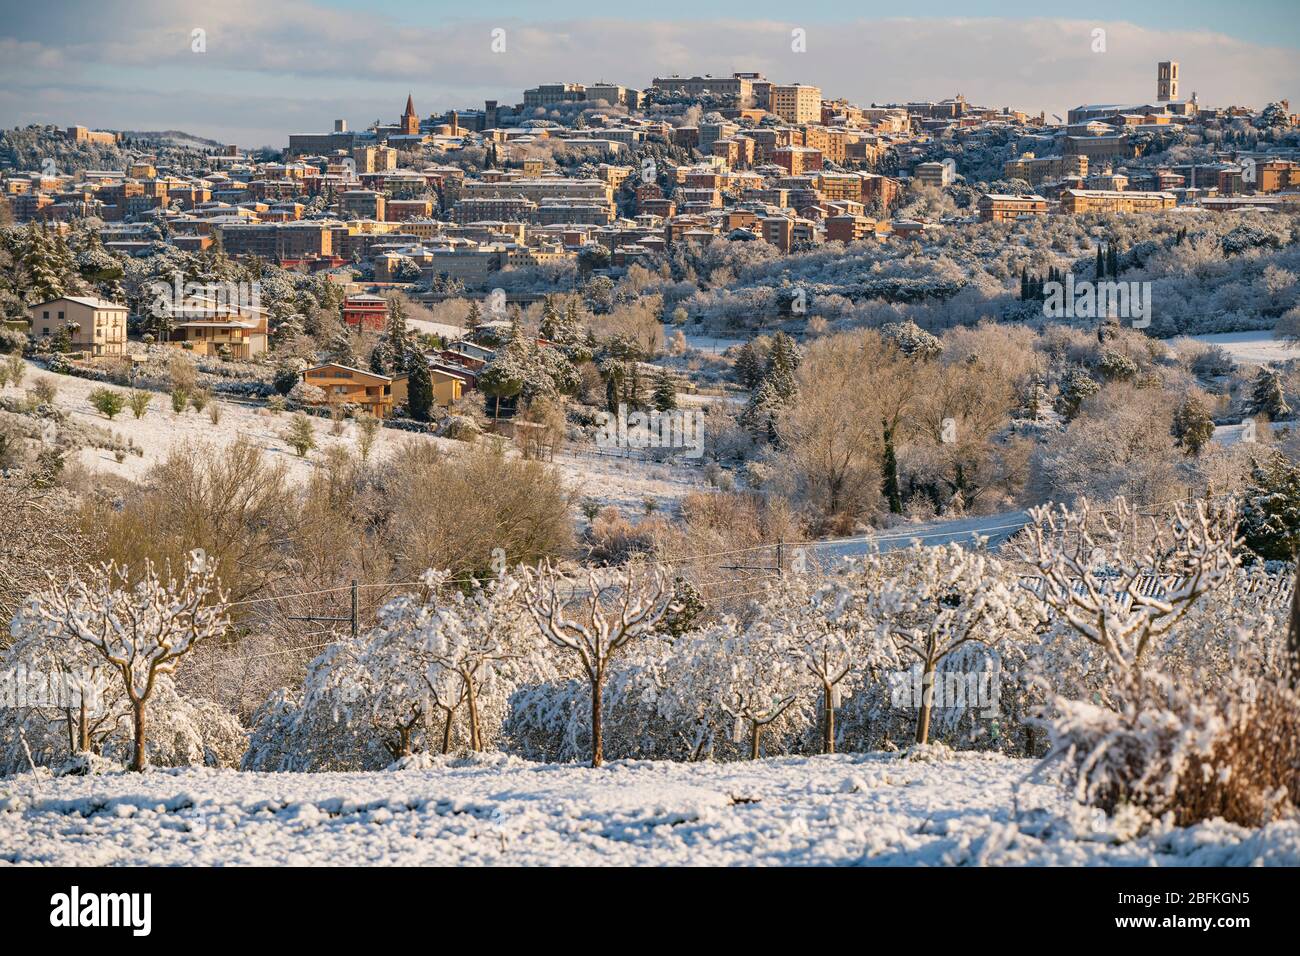 Perugia, Umbrien, Italien. Stimmungsvolle Winteransicht mit Schnee von Perugia mit seiner Skyline, umgeben von der Landschaft. Umbrien ist das grüne Herz Italiens. Stockfoto